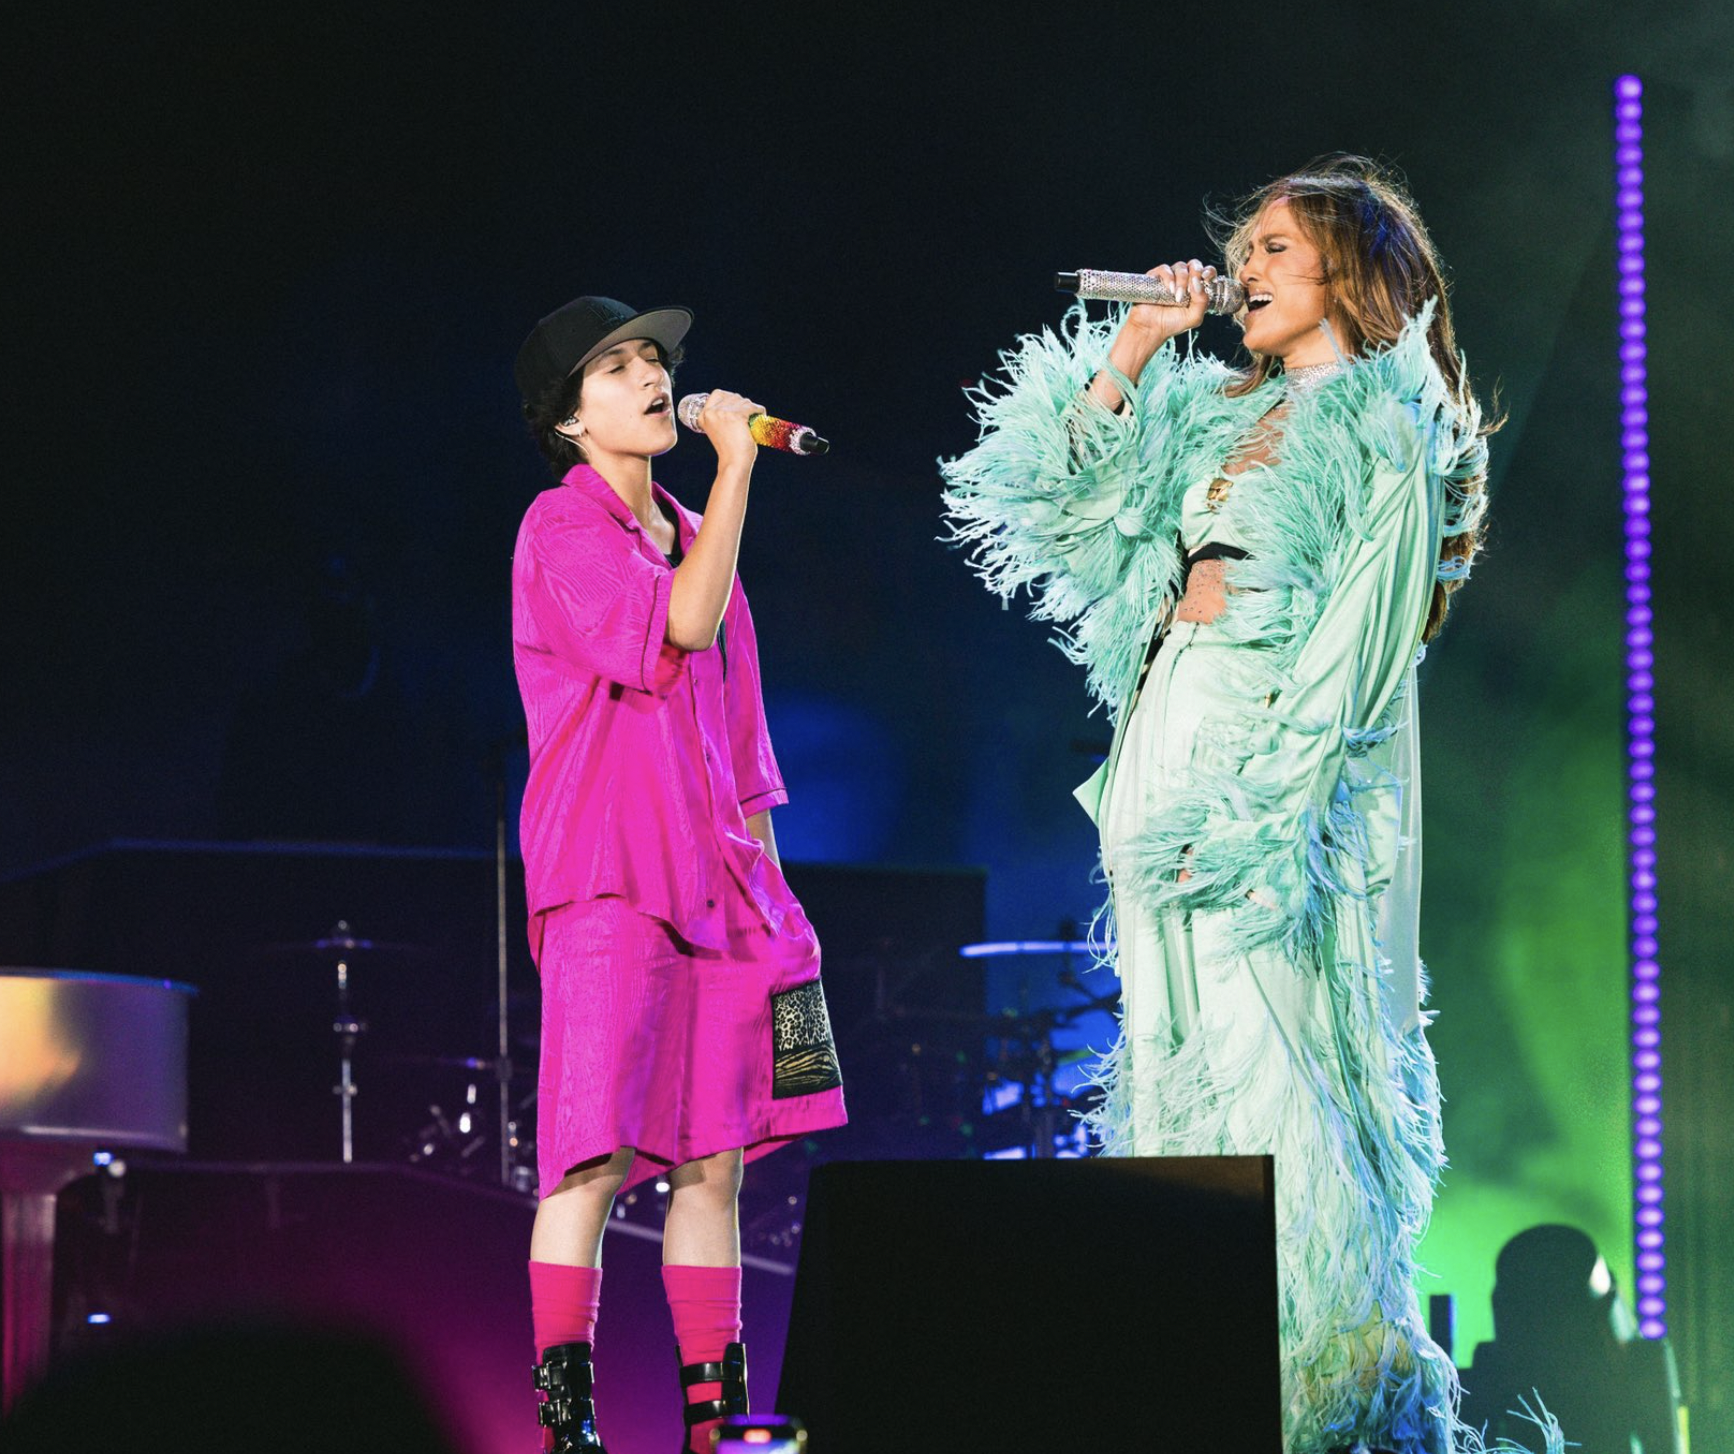 La cantante Jennifer López durante la actuación con su hije Emme.